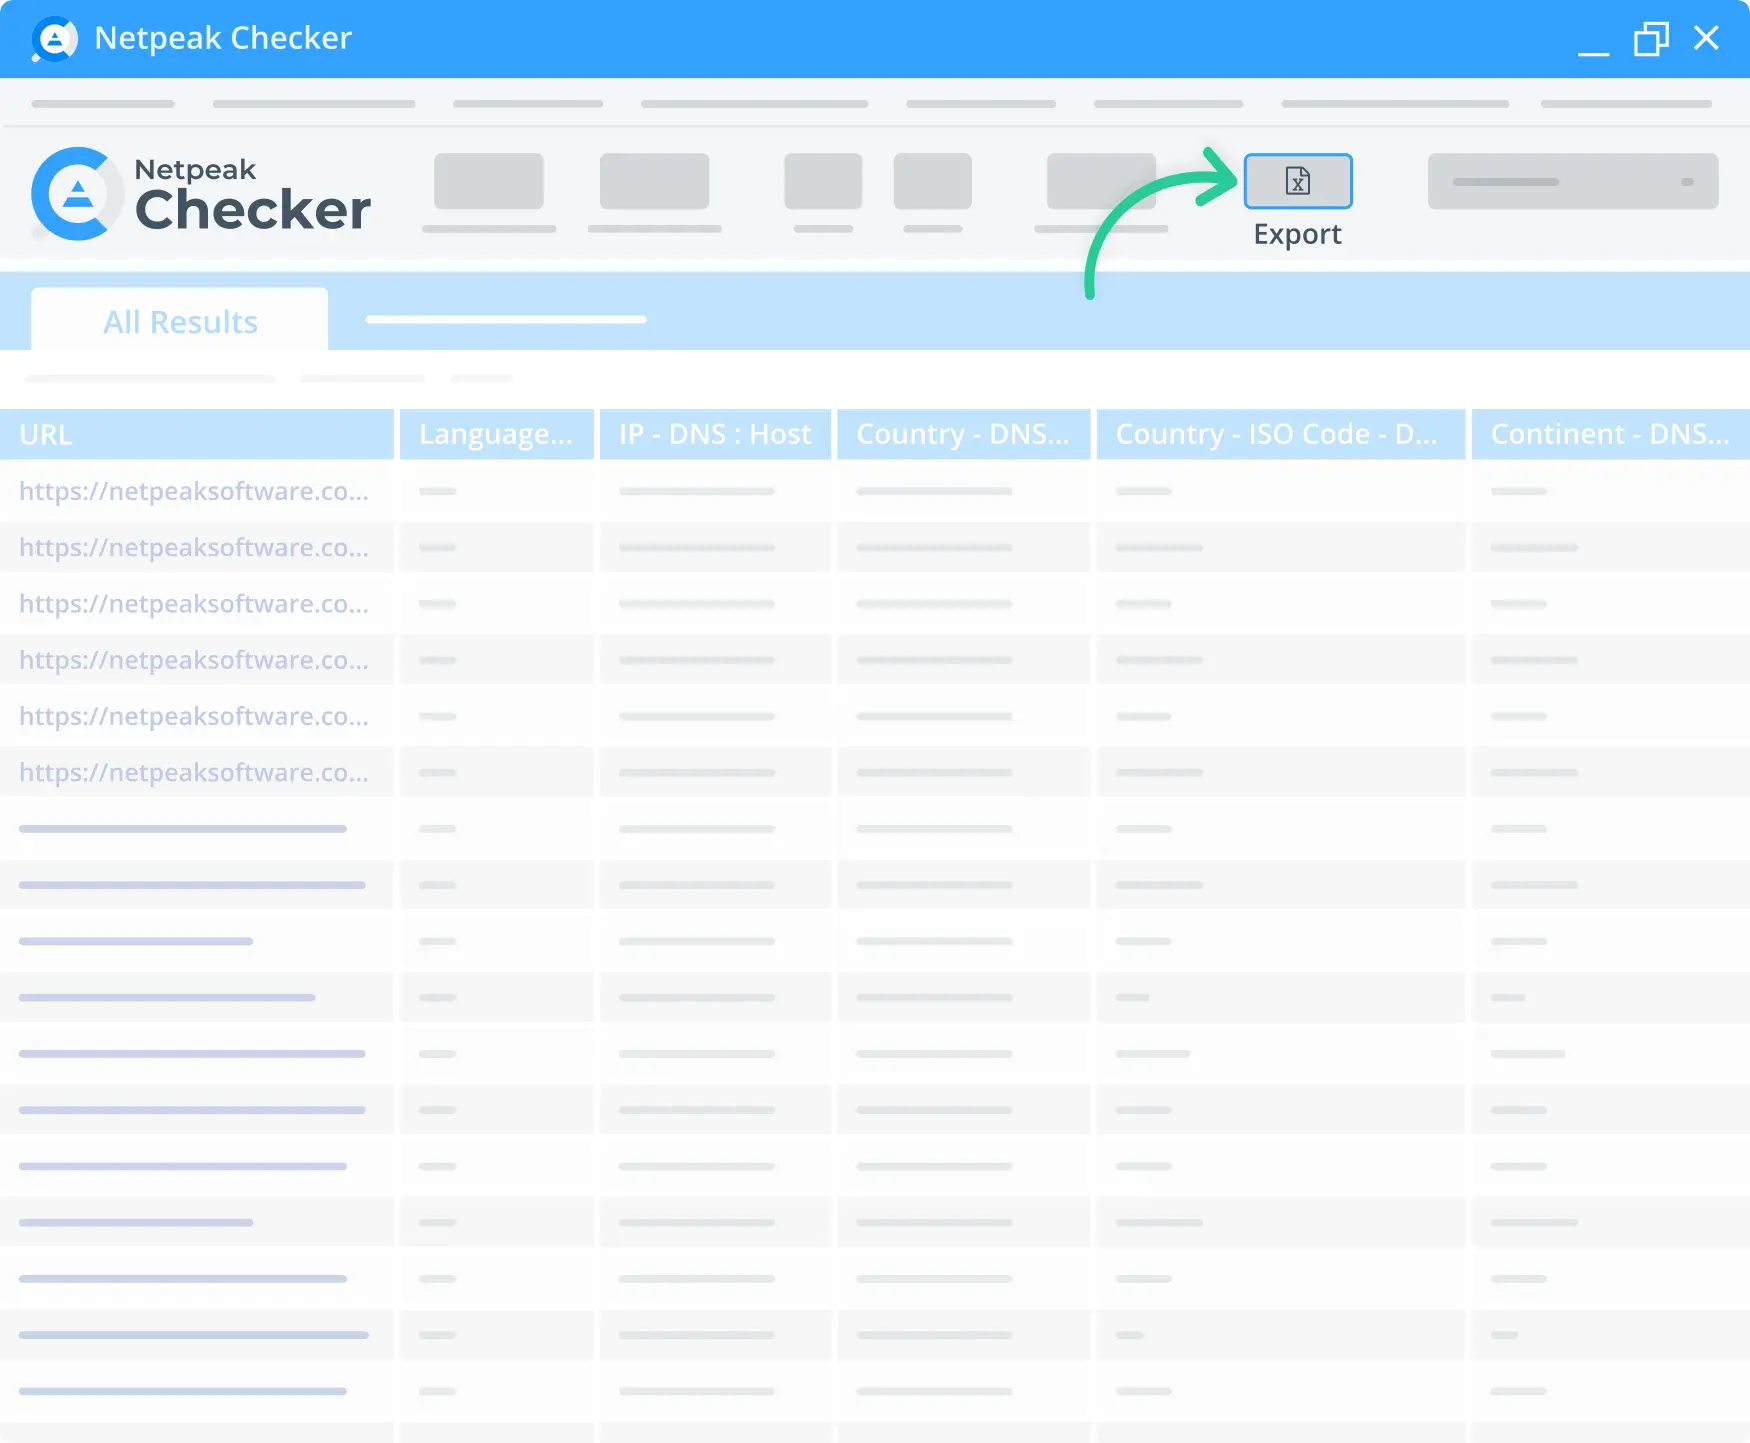 Вы можете скачать отчет анализа из Netpeak Checker всего за несколько минут.